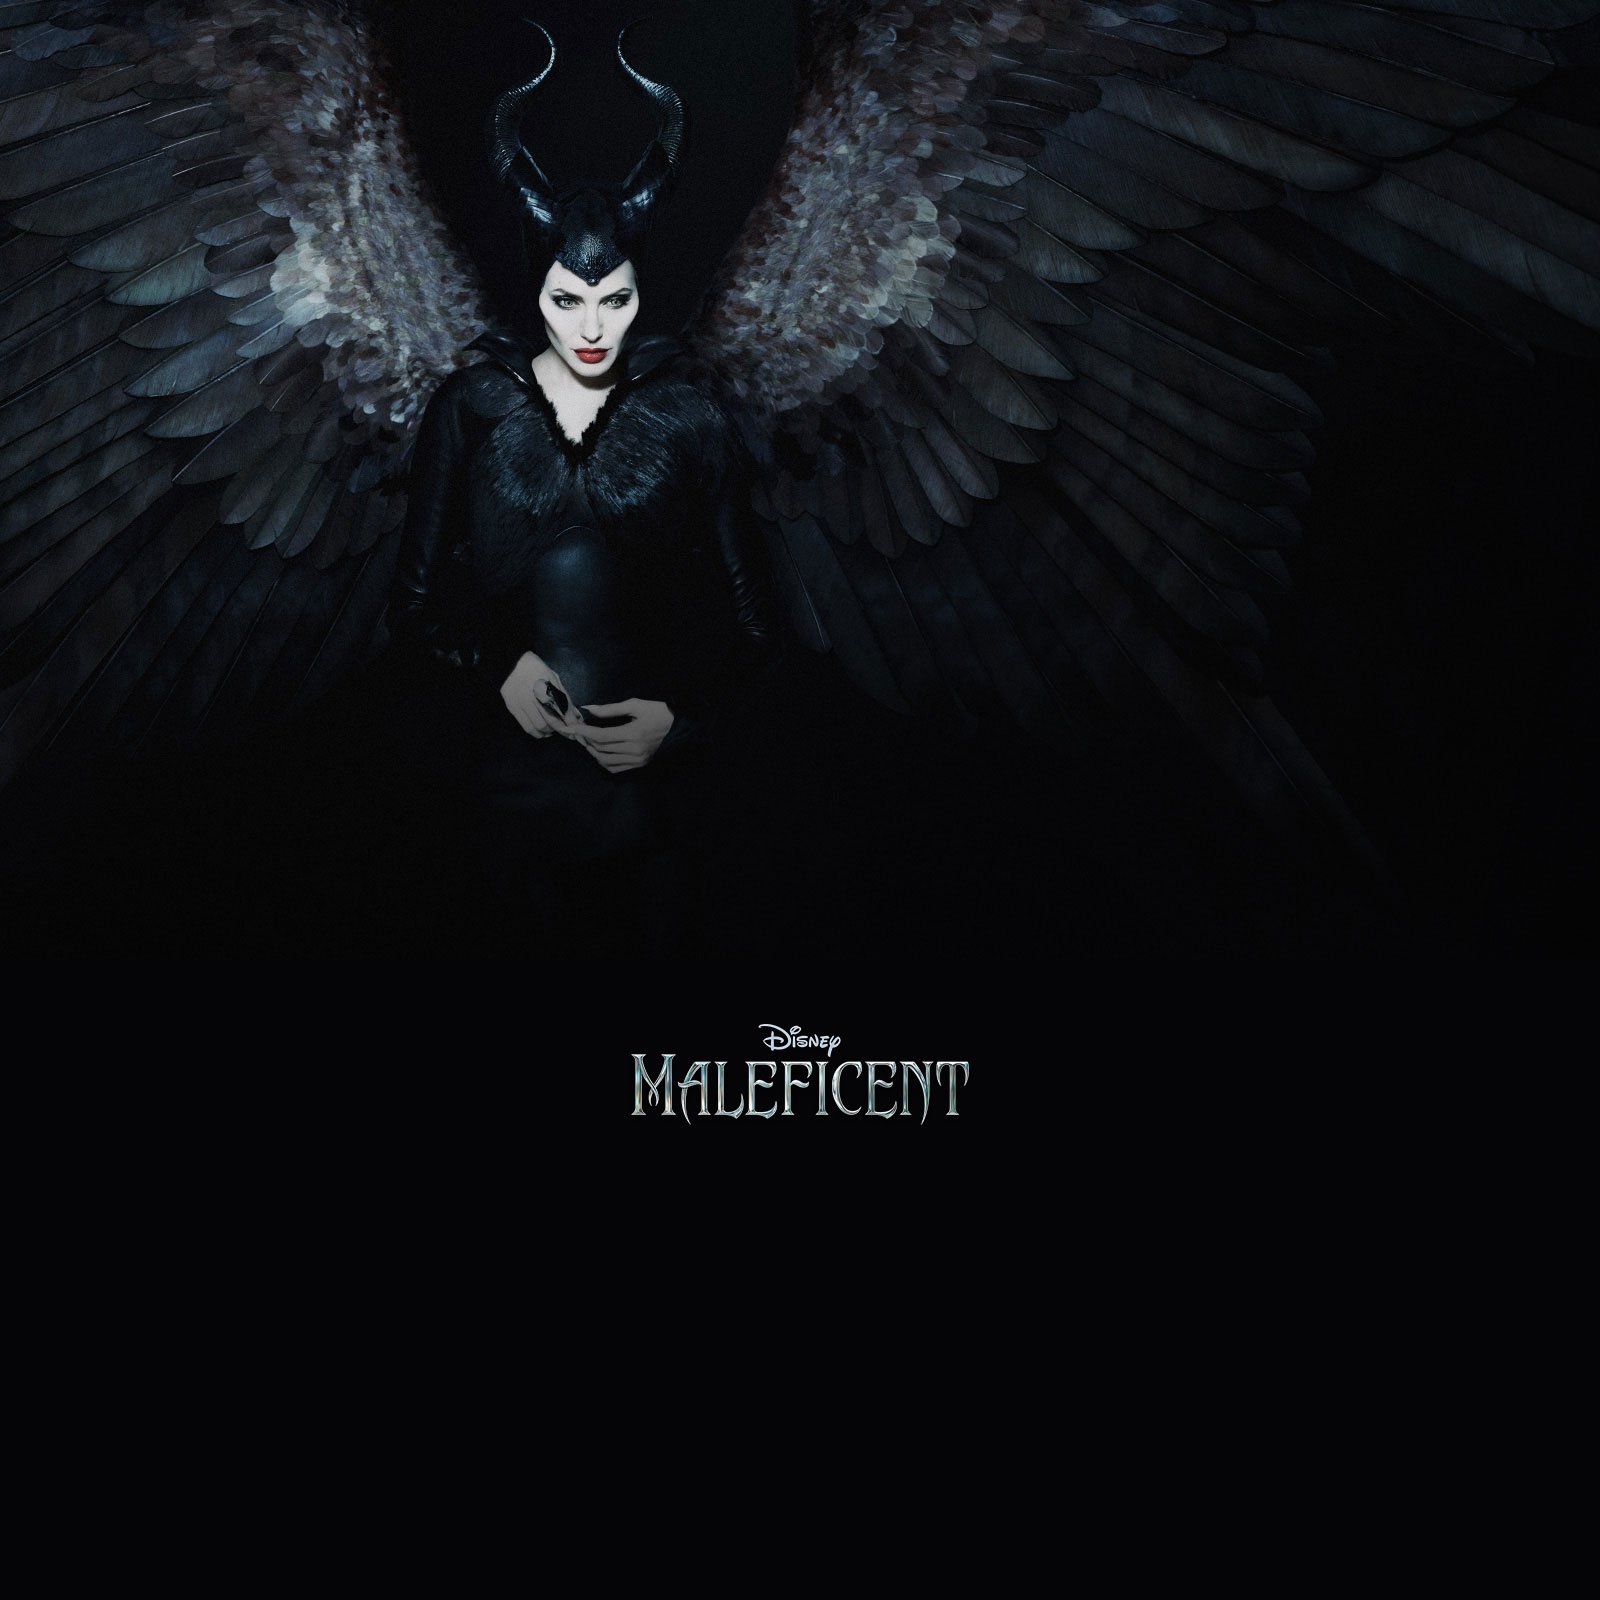 Download free Badass Maleficent Wallpaper - MrWallpaper.com